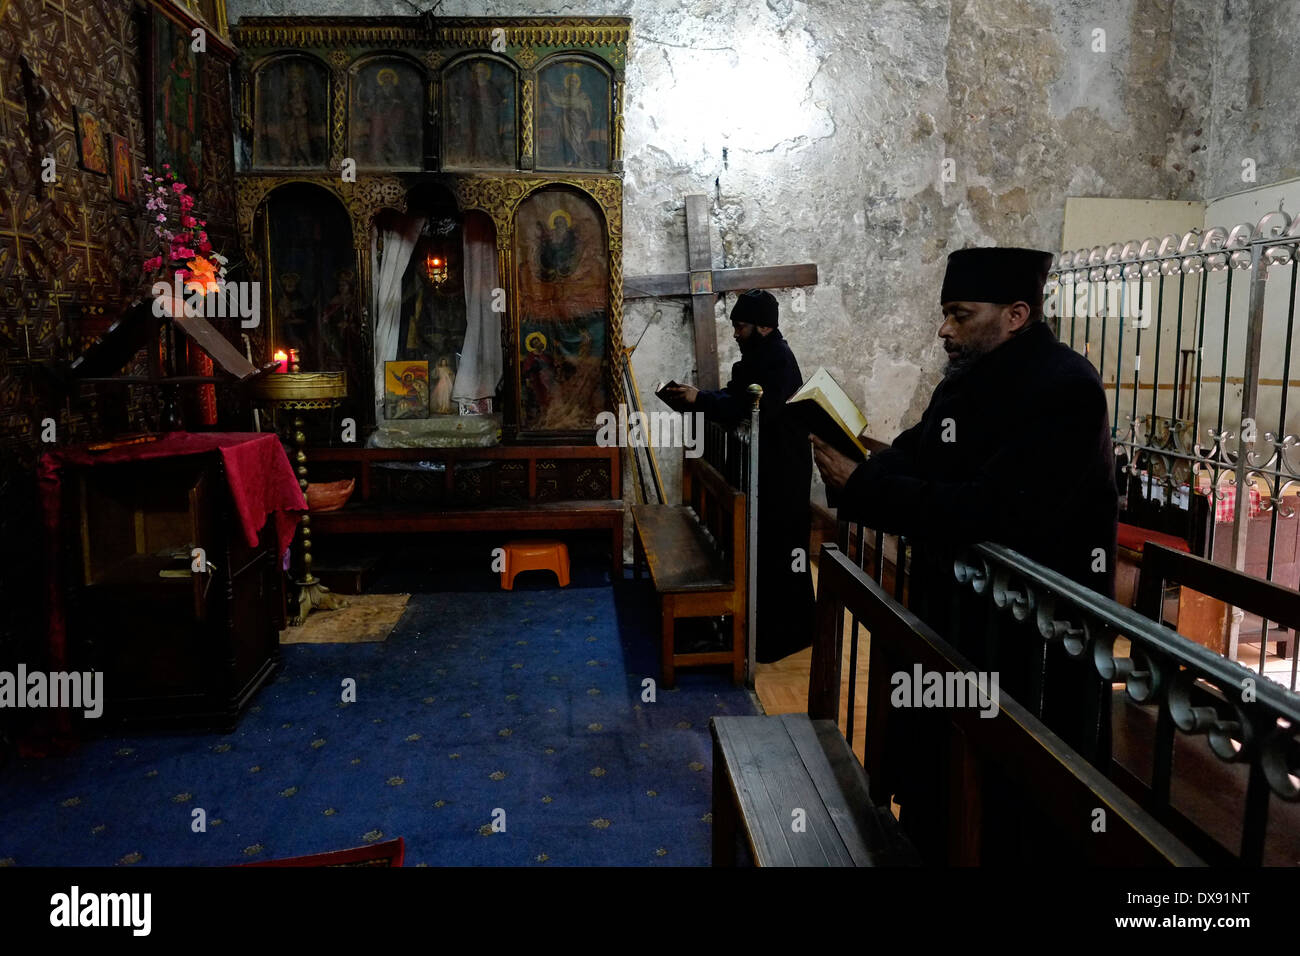 Les chrétiens orthodoxes éthiopiens prient à l'intérieur de la chapelle copte de Saint-Michel l'Archange dans la partie inférieure du monastère éthiopien Deir El-Sultan qui est situé sur le toit de l'église du Saint-Sépulcre dans la vieille ville de Jérusalem-est d'Israël Banque D'Images